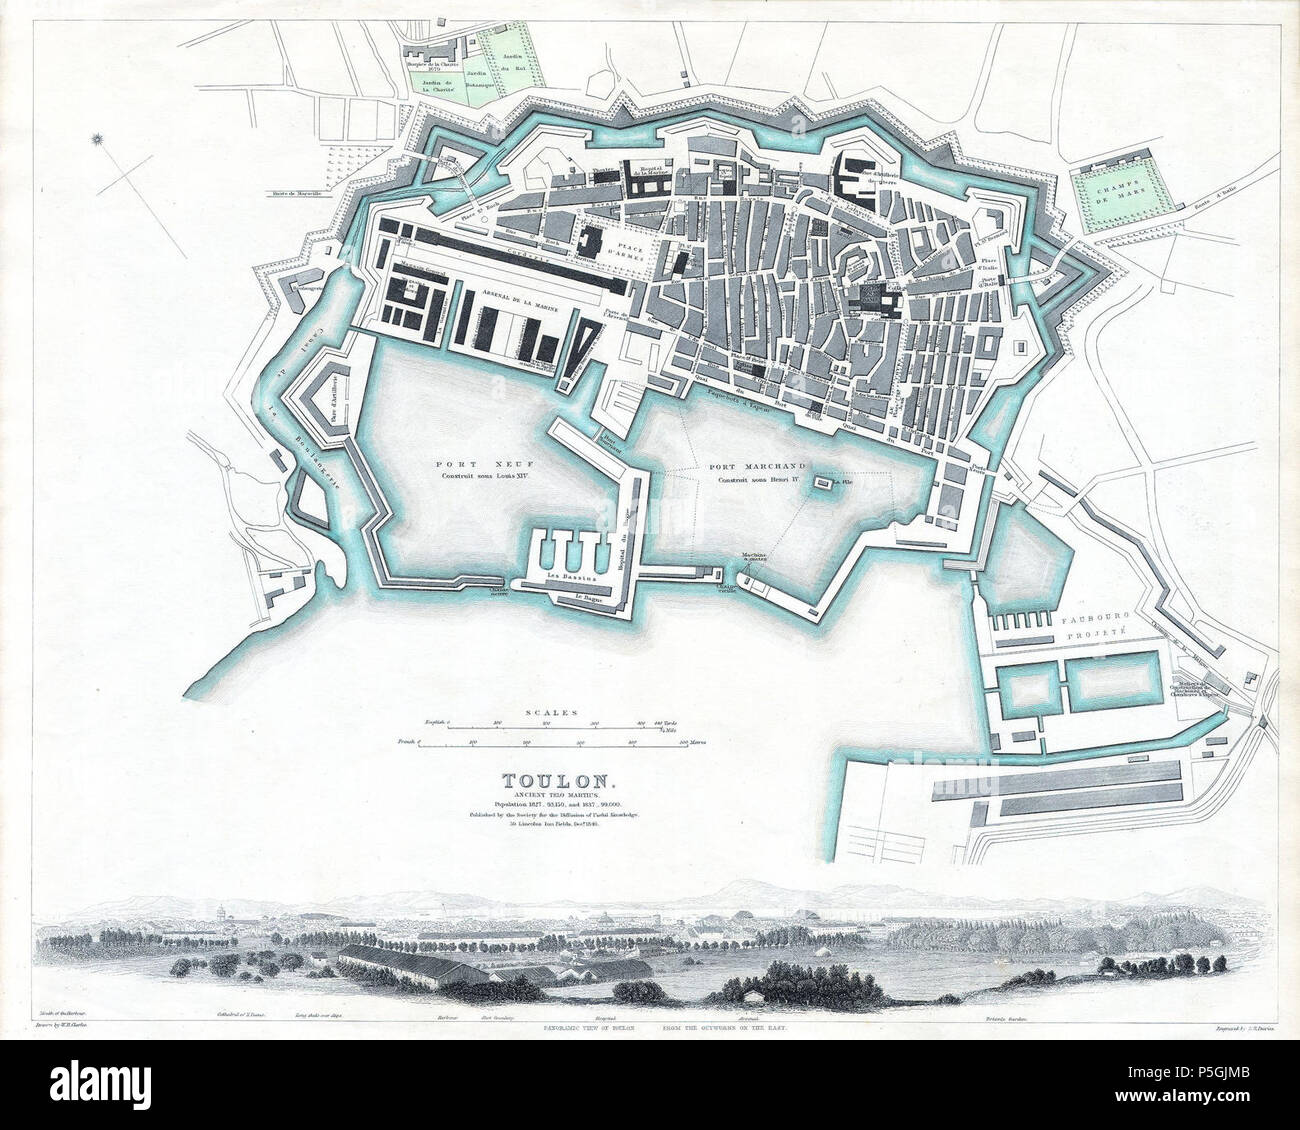 1840 S.D.U.K. Carte ou plan de ville de Toulon, France - Geographicus - Tulon-SDUK-1840. Banque D'Images